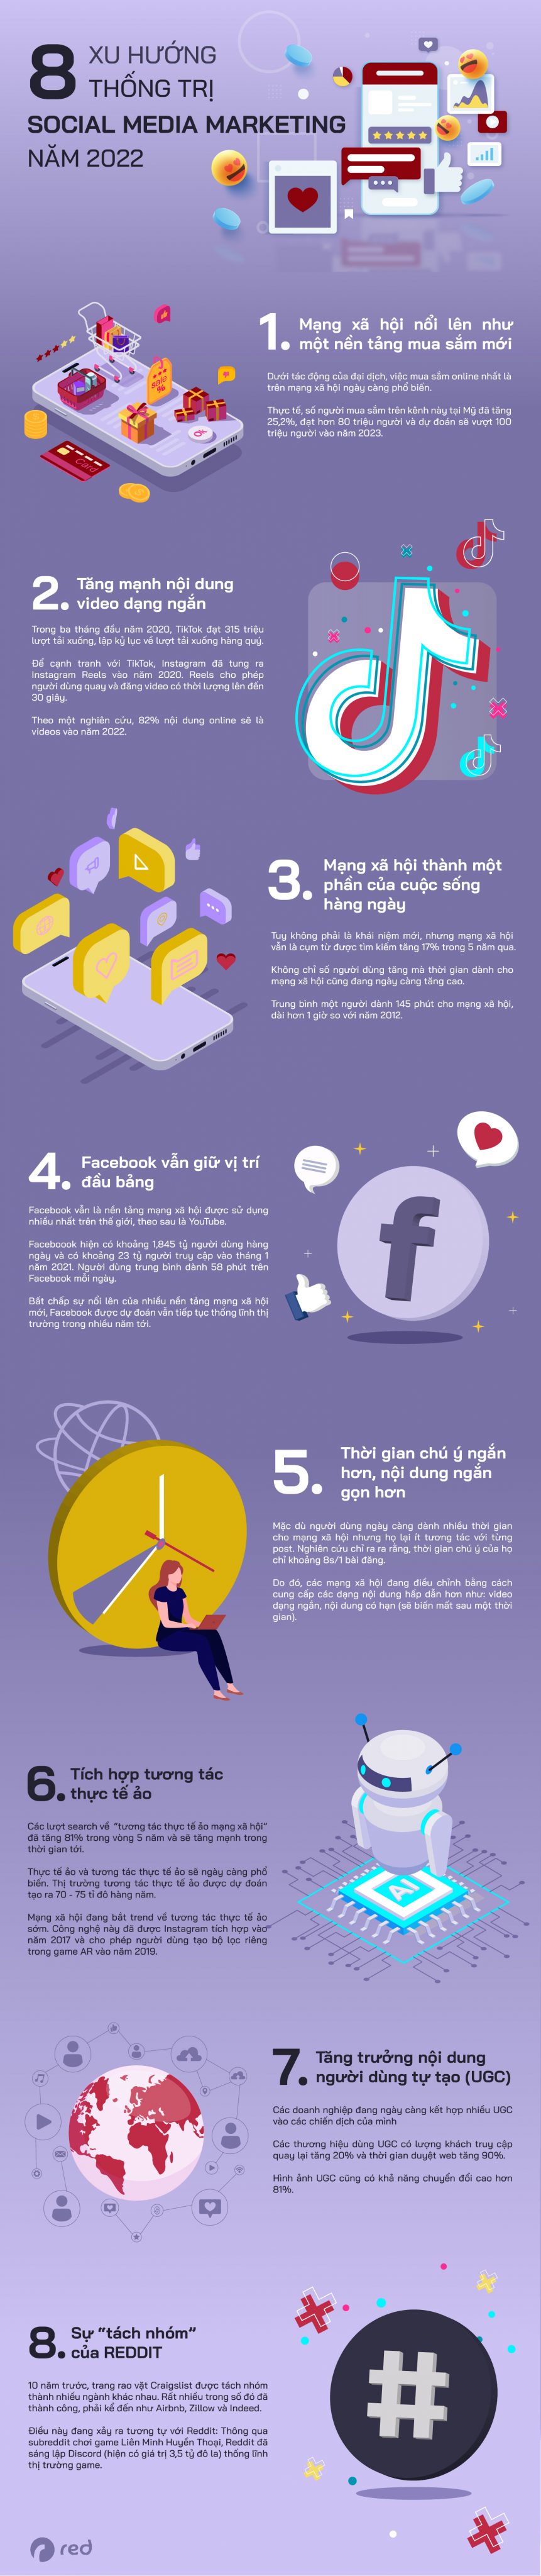 8 xu hướng thống trị social media marketing